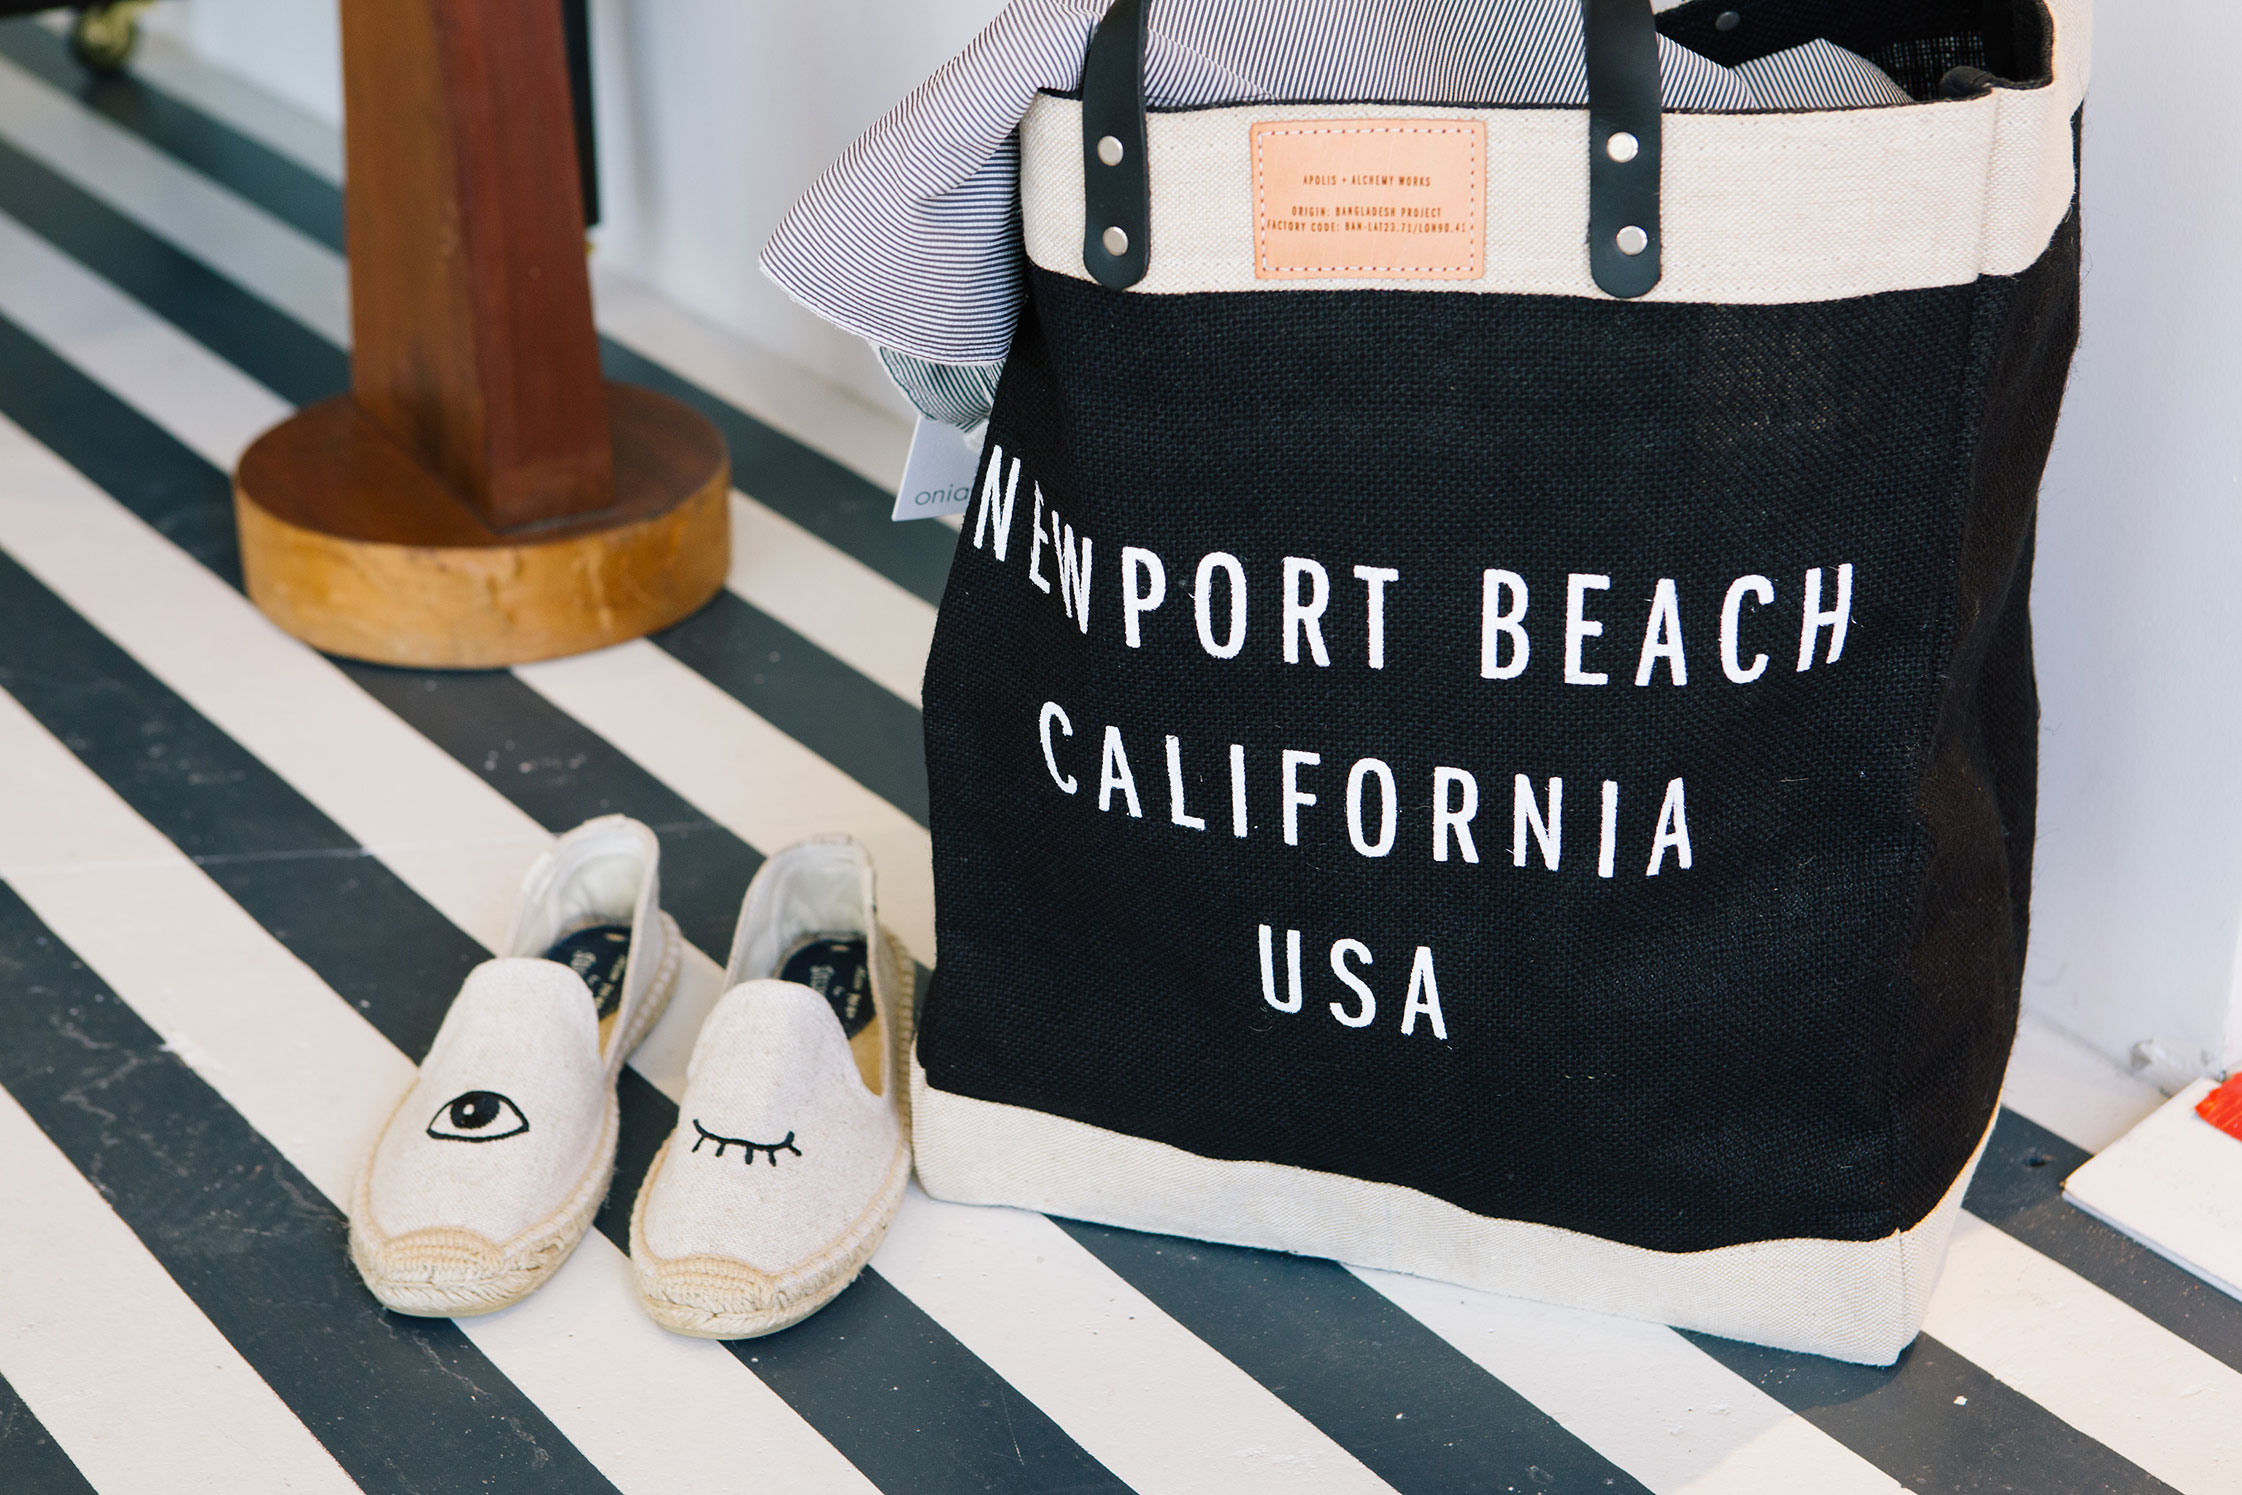 Santa Monica CA Apolis Tote Bag